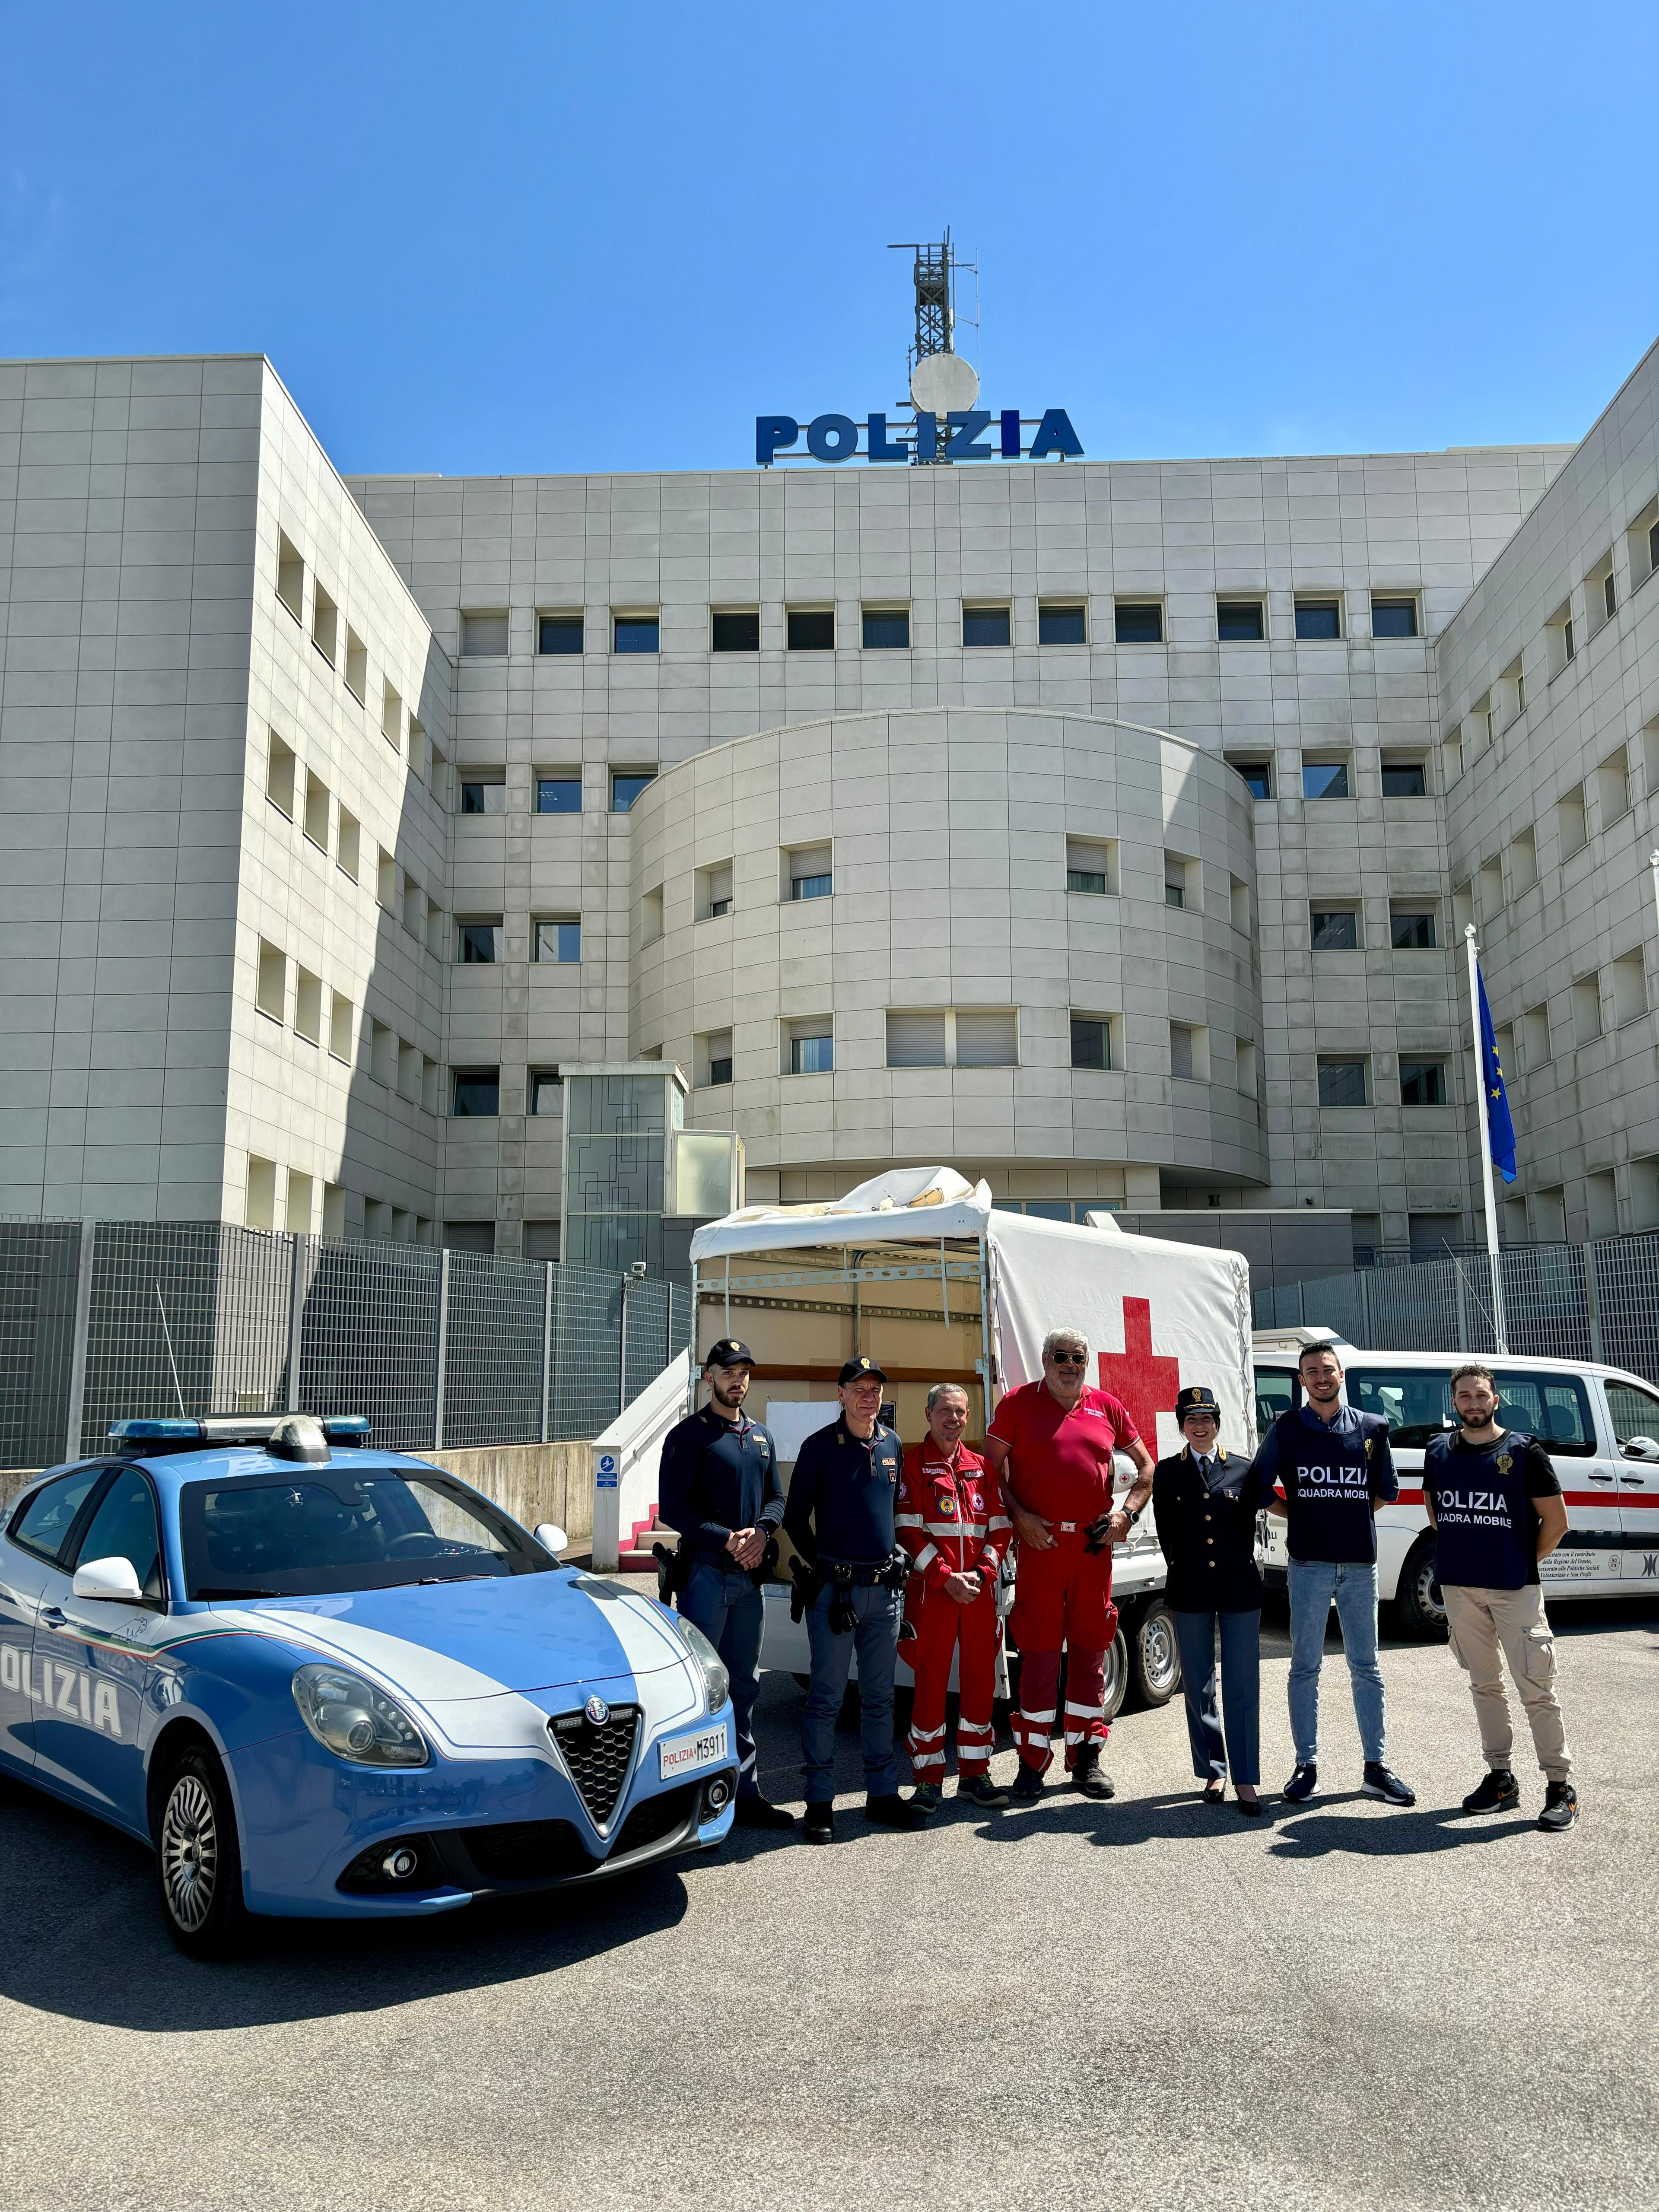 Polizia di Stato: la Questura di Rovigo devolve alla Croce Rossa Italiana della refurtiva a scopo benefico